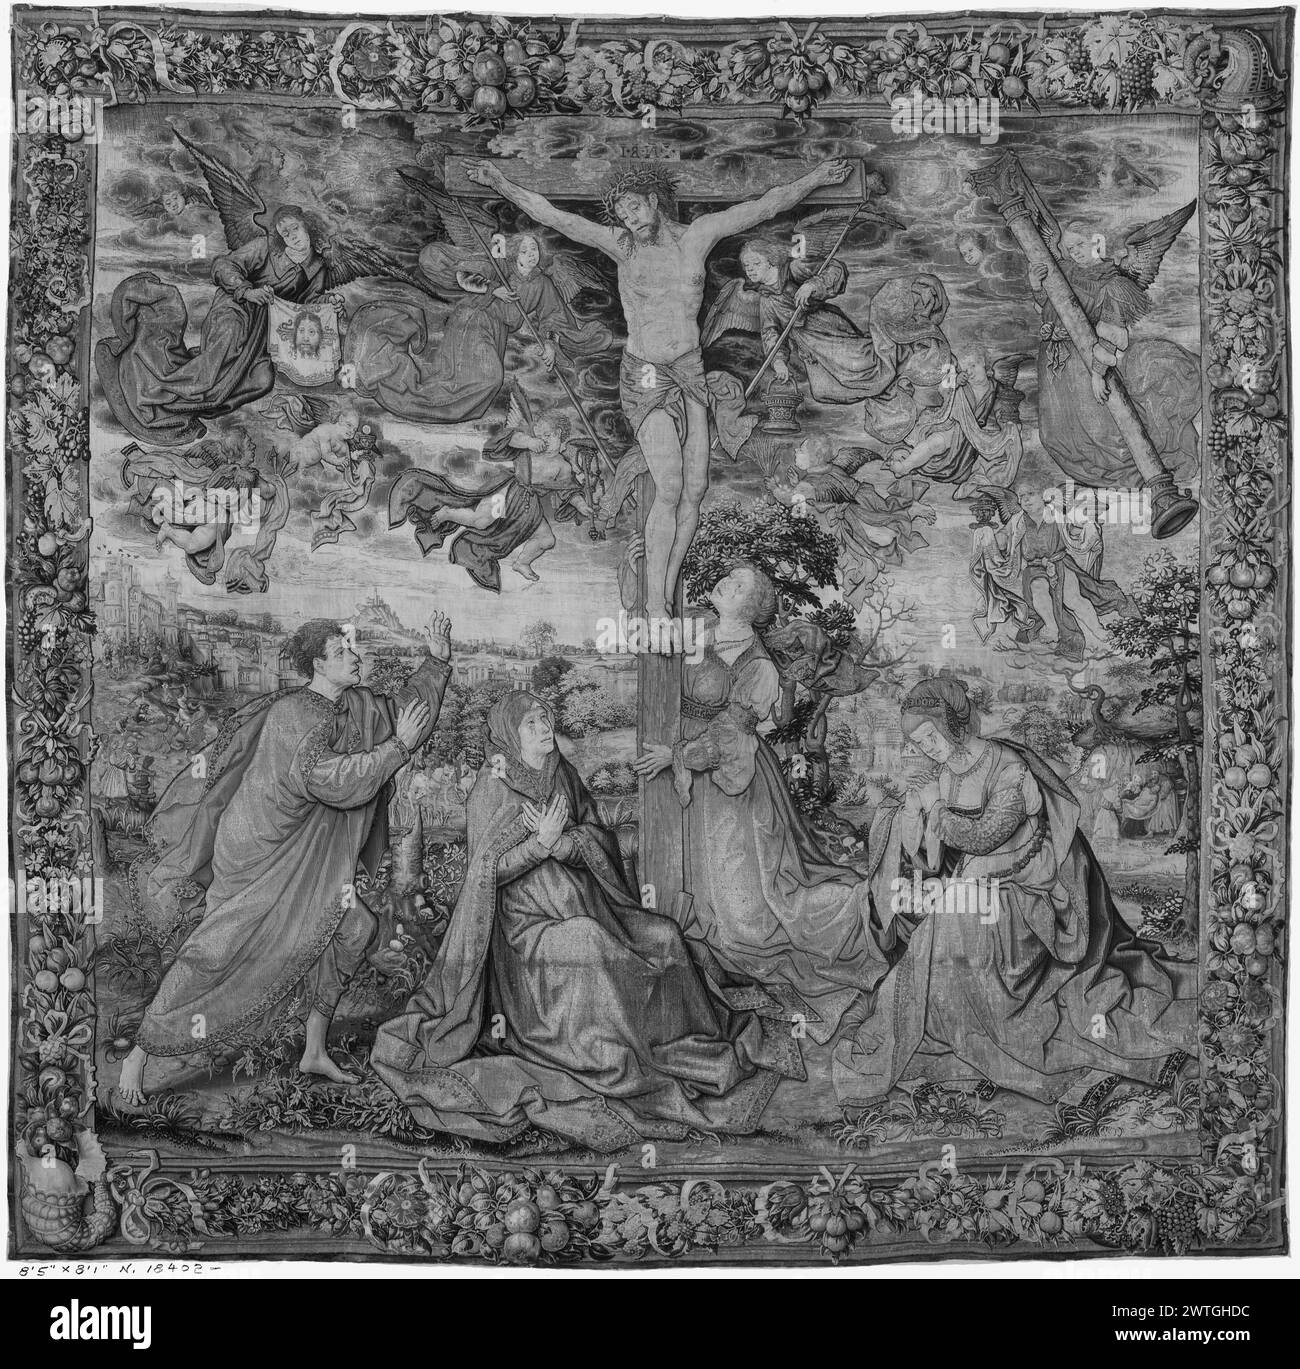 Crucifixion du Christ. Orley, Bernart van (pays-Bas (avant 1600) - Flandre, CA.1492-1542) (dessiné après) [peintre] Aelst, Pieter van (pays-Bas (avant 1600) - Flandre, ACT.1495-1532) (atelier, attr.) [weaver] Pannemaker, Pieter de I (pays-Bas (avant 1600) - Flandre, Act.1517-1535) (atelier, attr.) [tisserand] c. 1520-1530 tapisserie dimensions : H 8'3' x l 8'2' tapisserie matériaux/techniques : laine (chaîne : 20-21/po ; 7-8/cm) ; soie ; fil métallique (argent) ; fil métallique (argent-doré) culture : Sud des pays-Bas histoire de propriété : Duke of Berwick & Alba coll. ; vendu à Paris, Banque D'Images